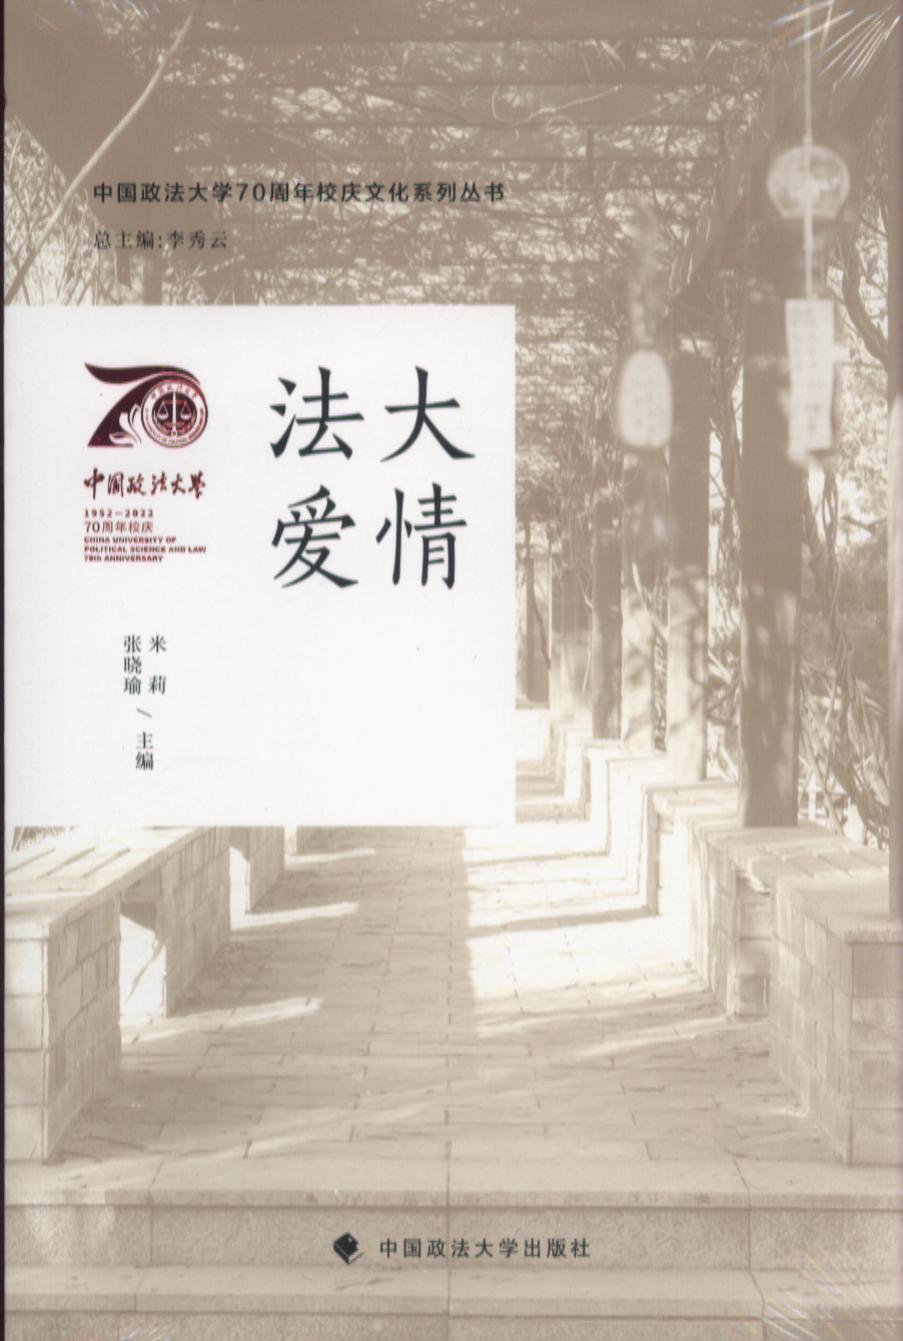 法大爱情/中国政法大学70周年校庆文化系列丛书